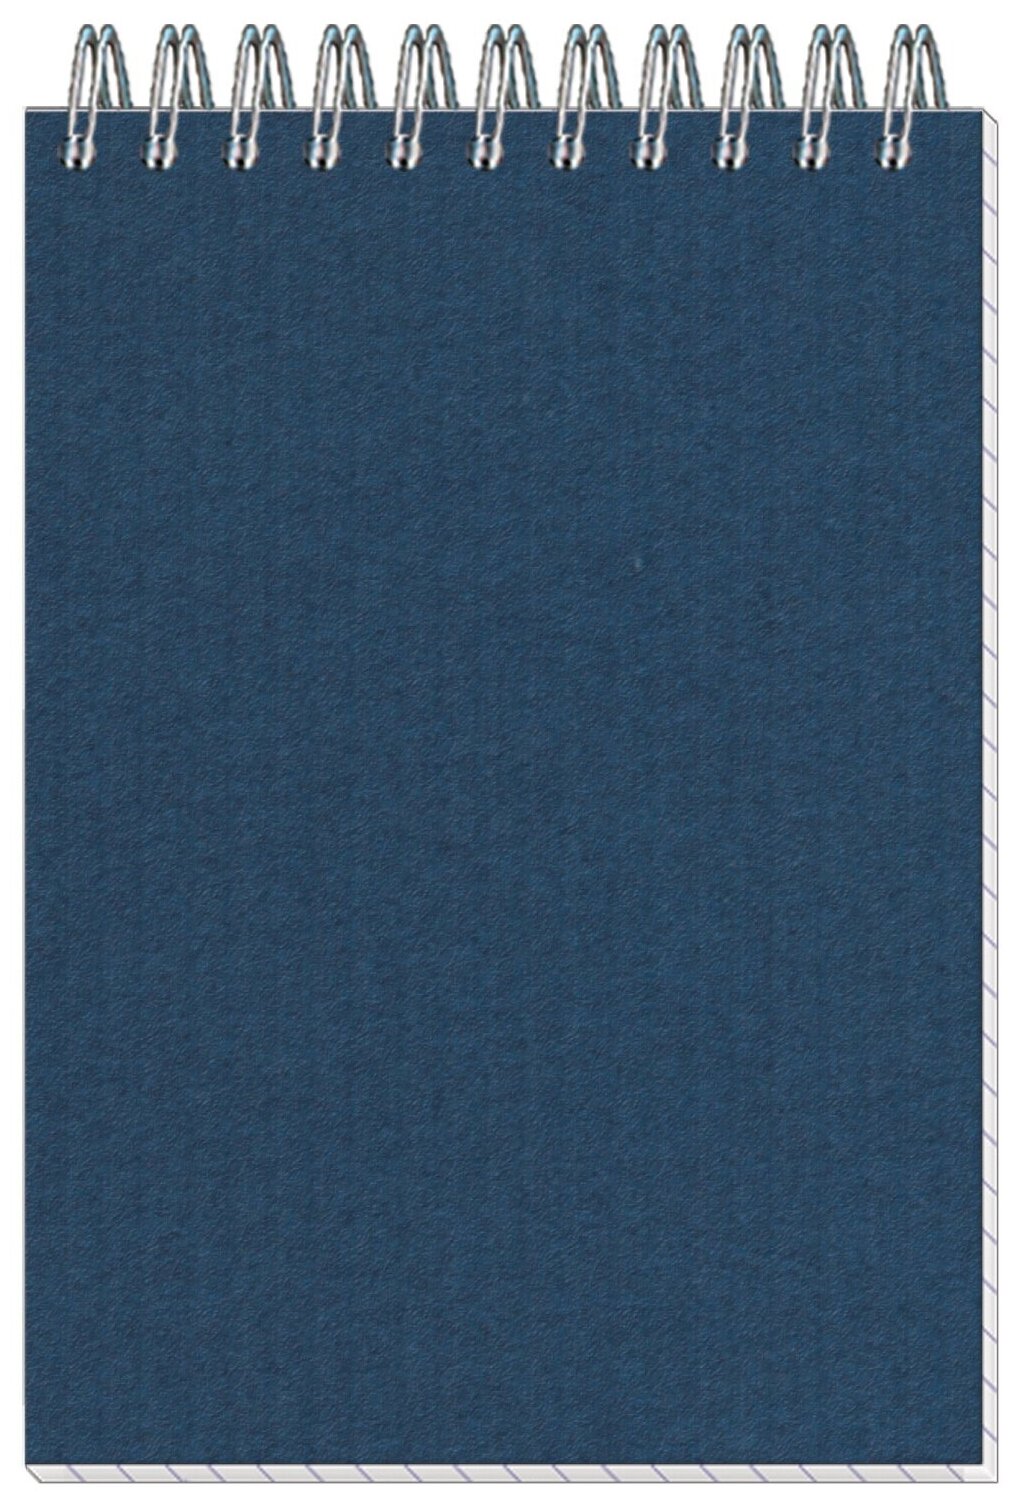 Блокнот Полином Микро вельвет, А6, 50 листов, спираль, синий, клетка